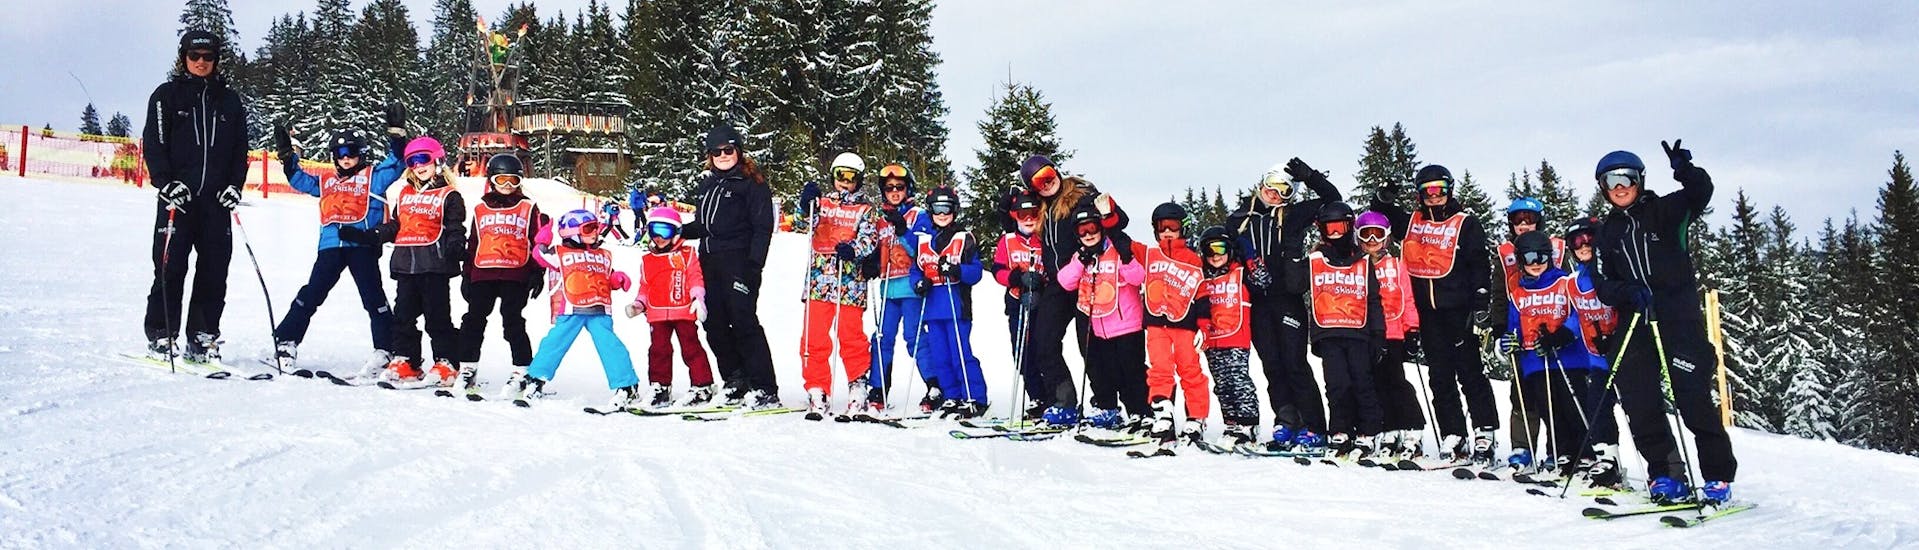 Cours de ski Enfants (6-14 ans) pour Tous niveaux.